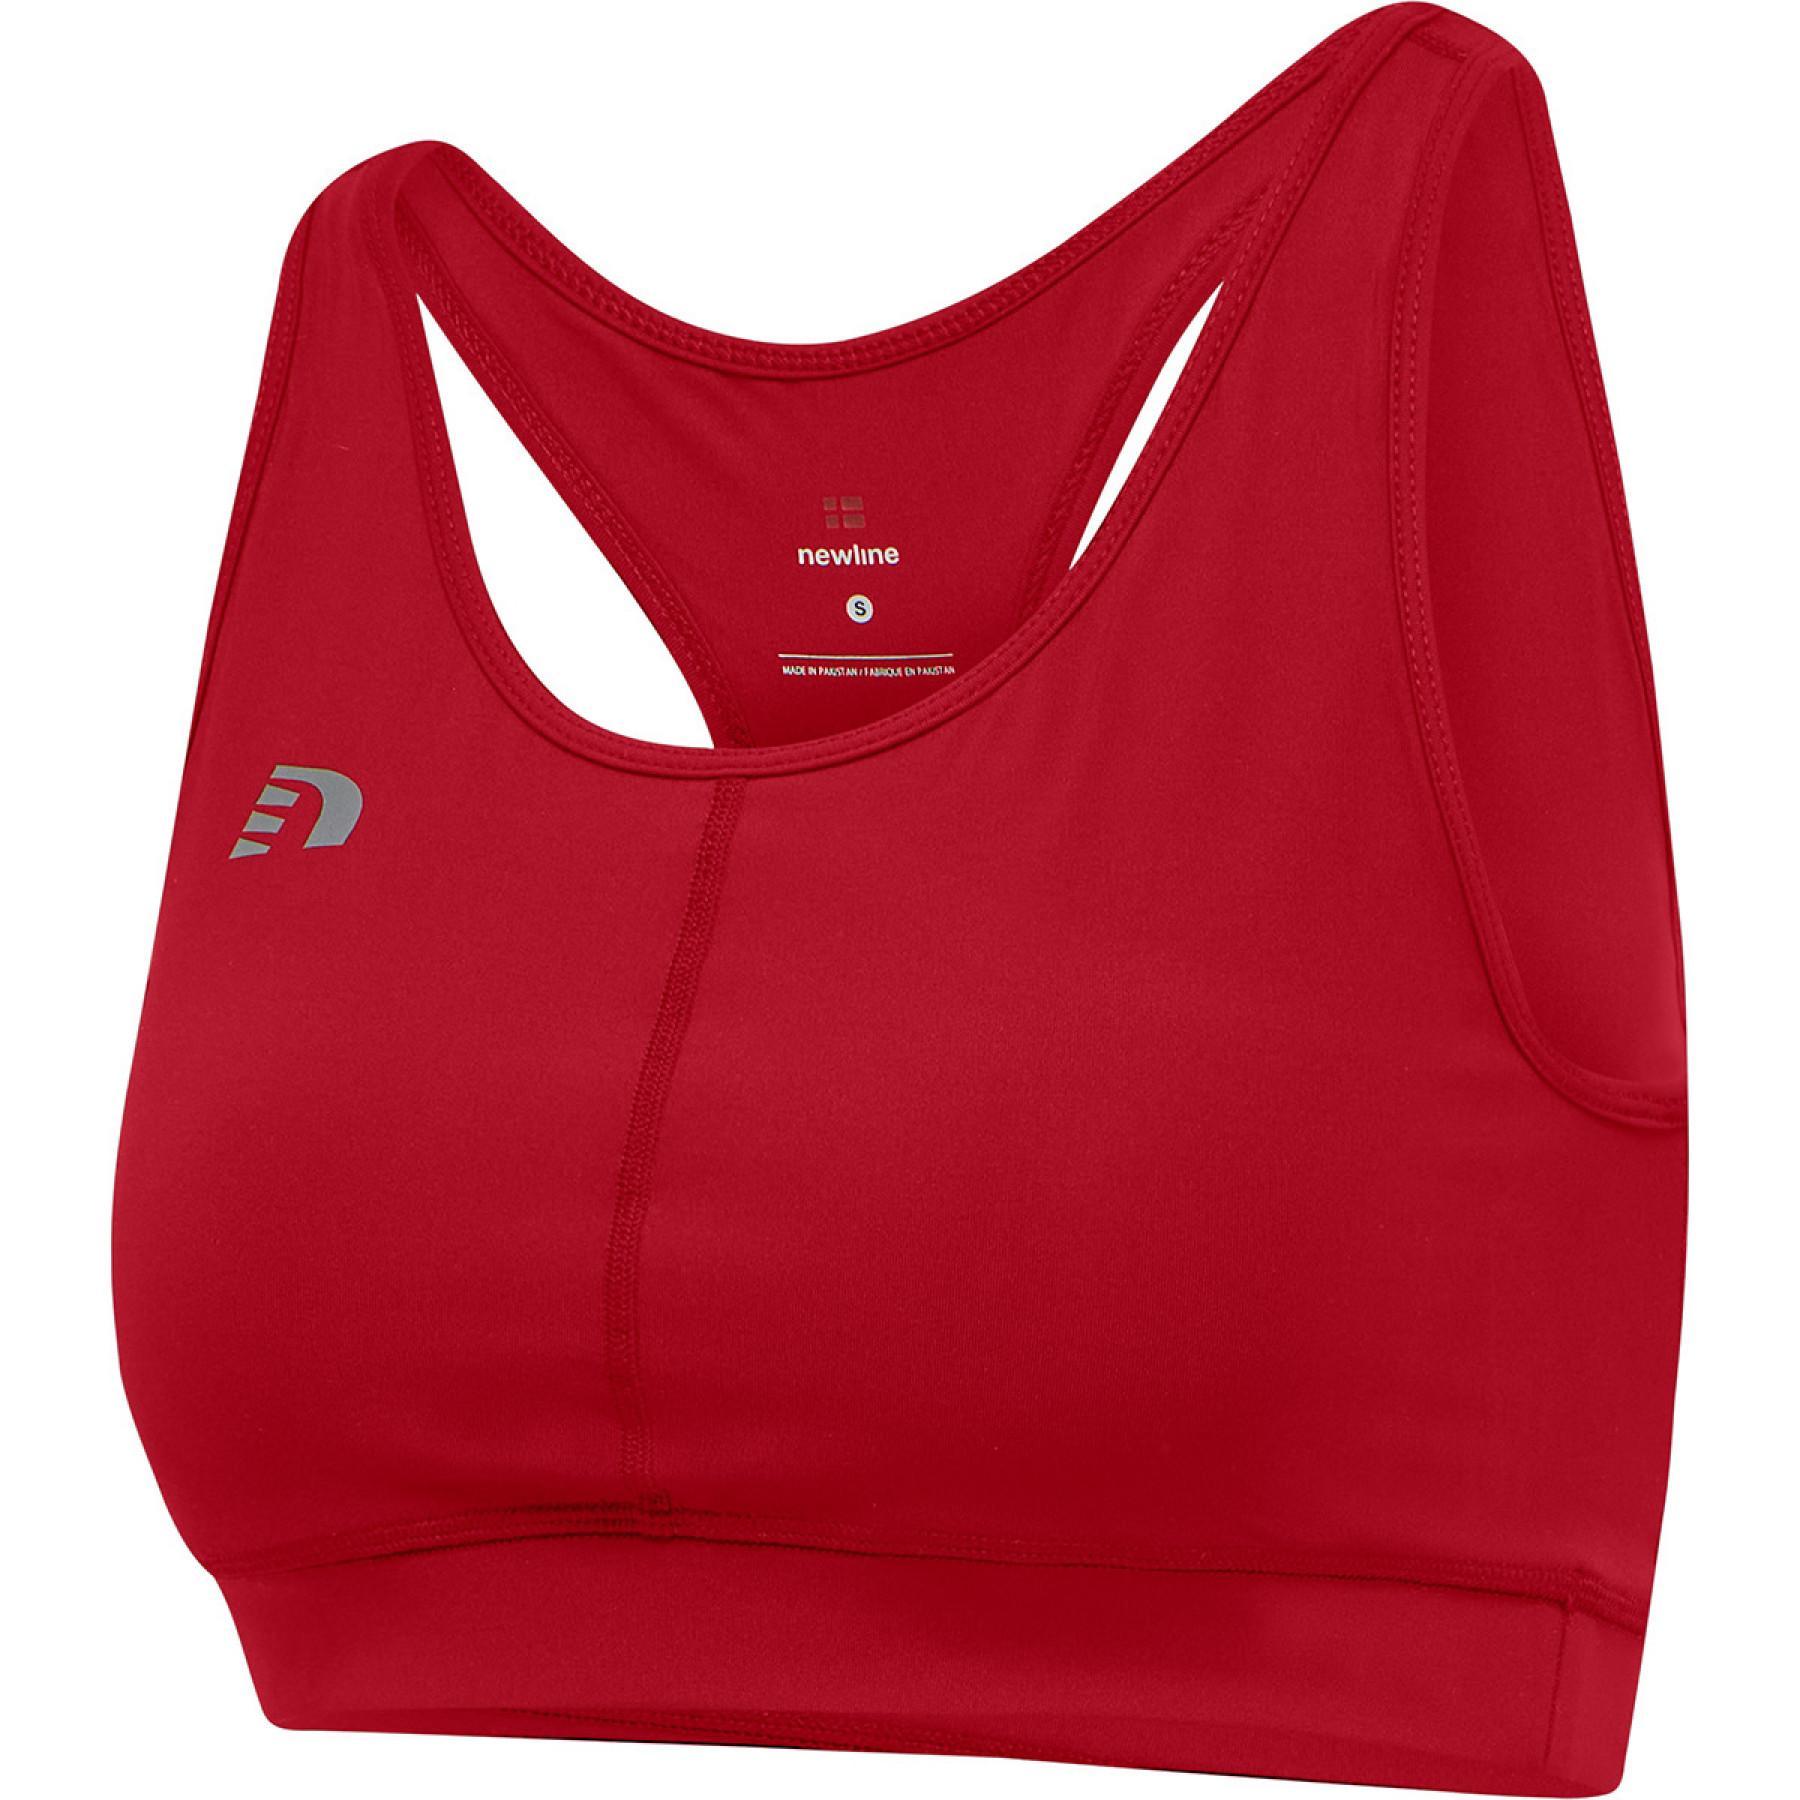 Women's bra Newline core athletic - Sports bras - Women's wear